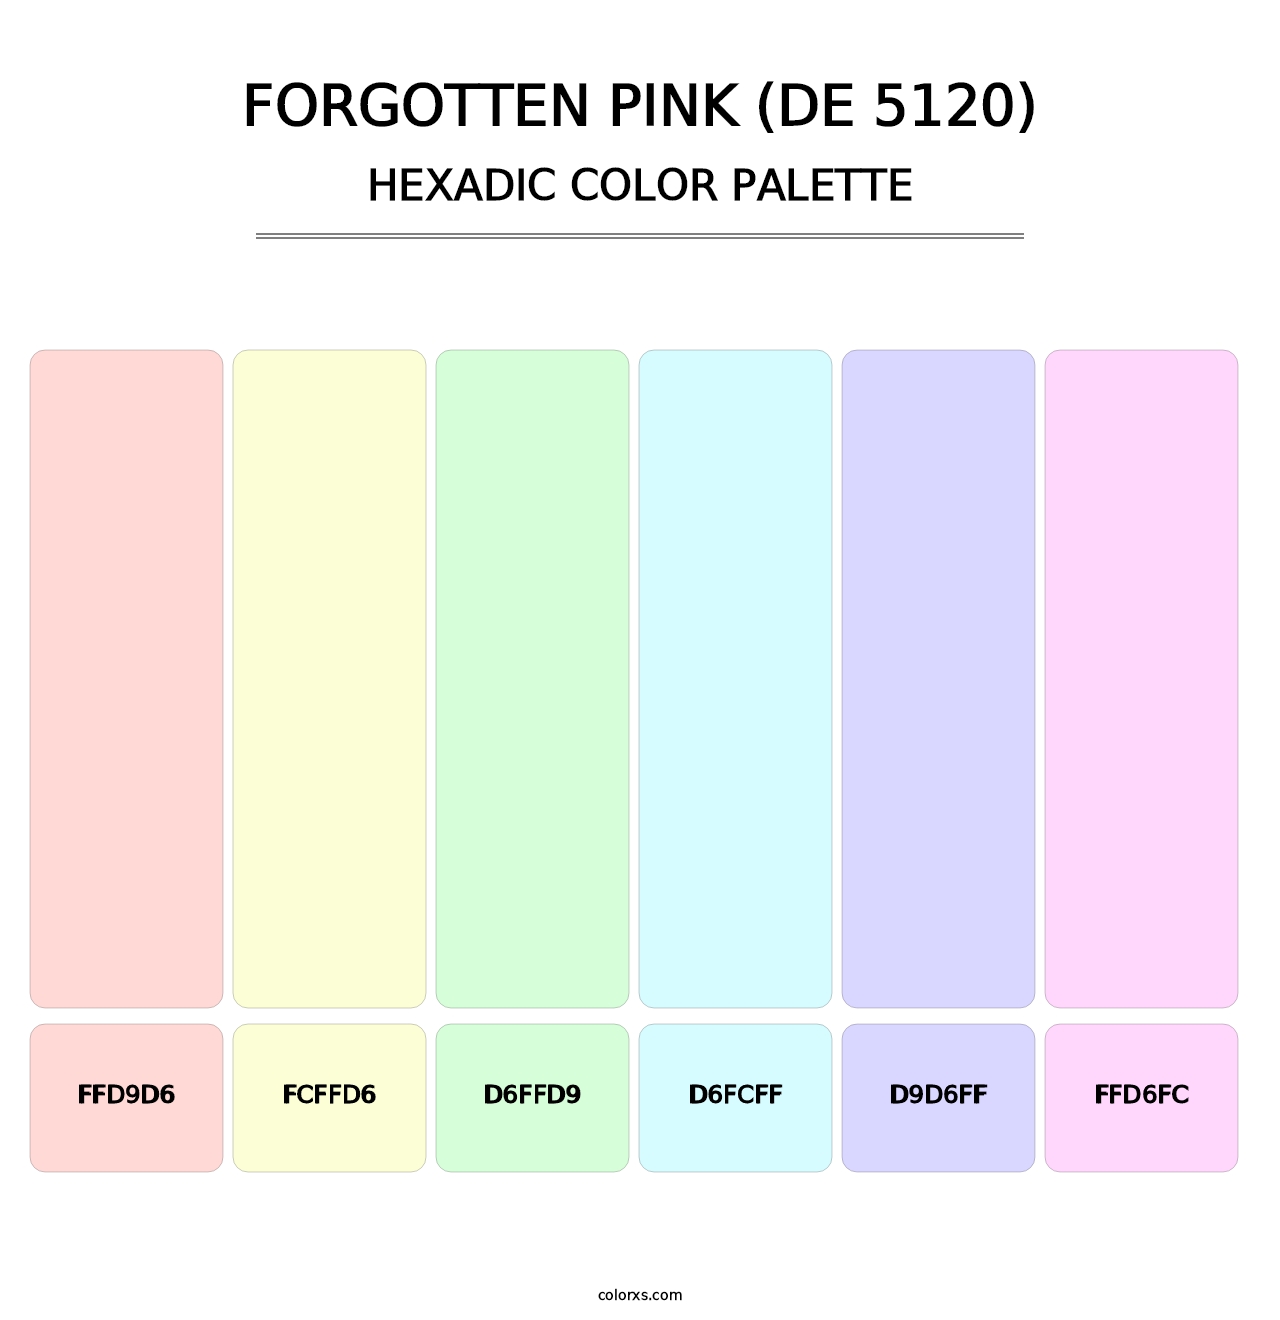 Forgotten Pink (DE 5120) - Hexadic Color Palette